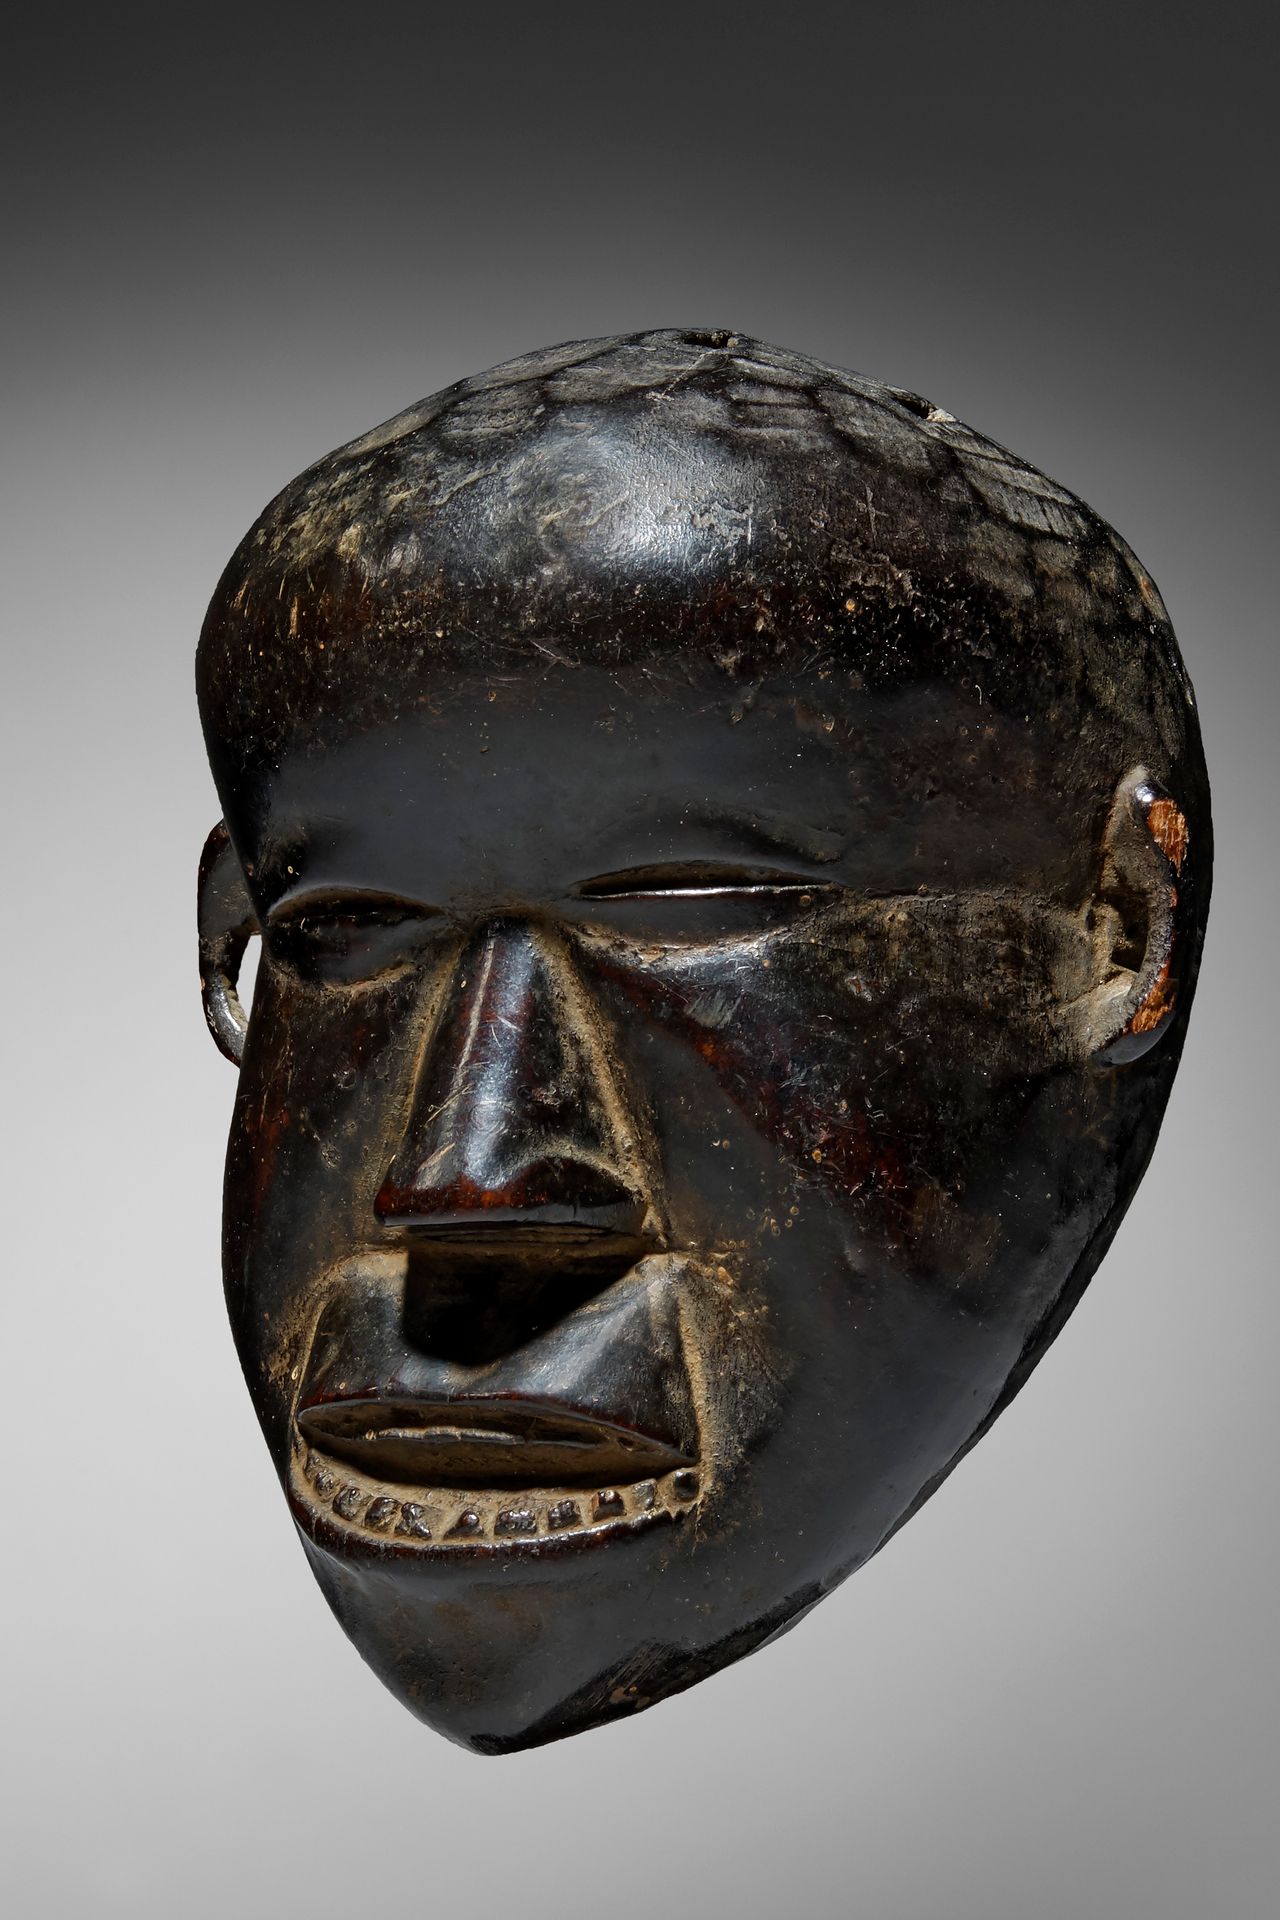 Dan Mano Pasport Mask Liberia

Madera - 13,5 cm

Procedencia:

Colección privada&hellip;